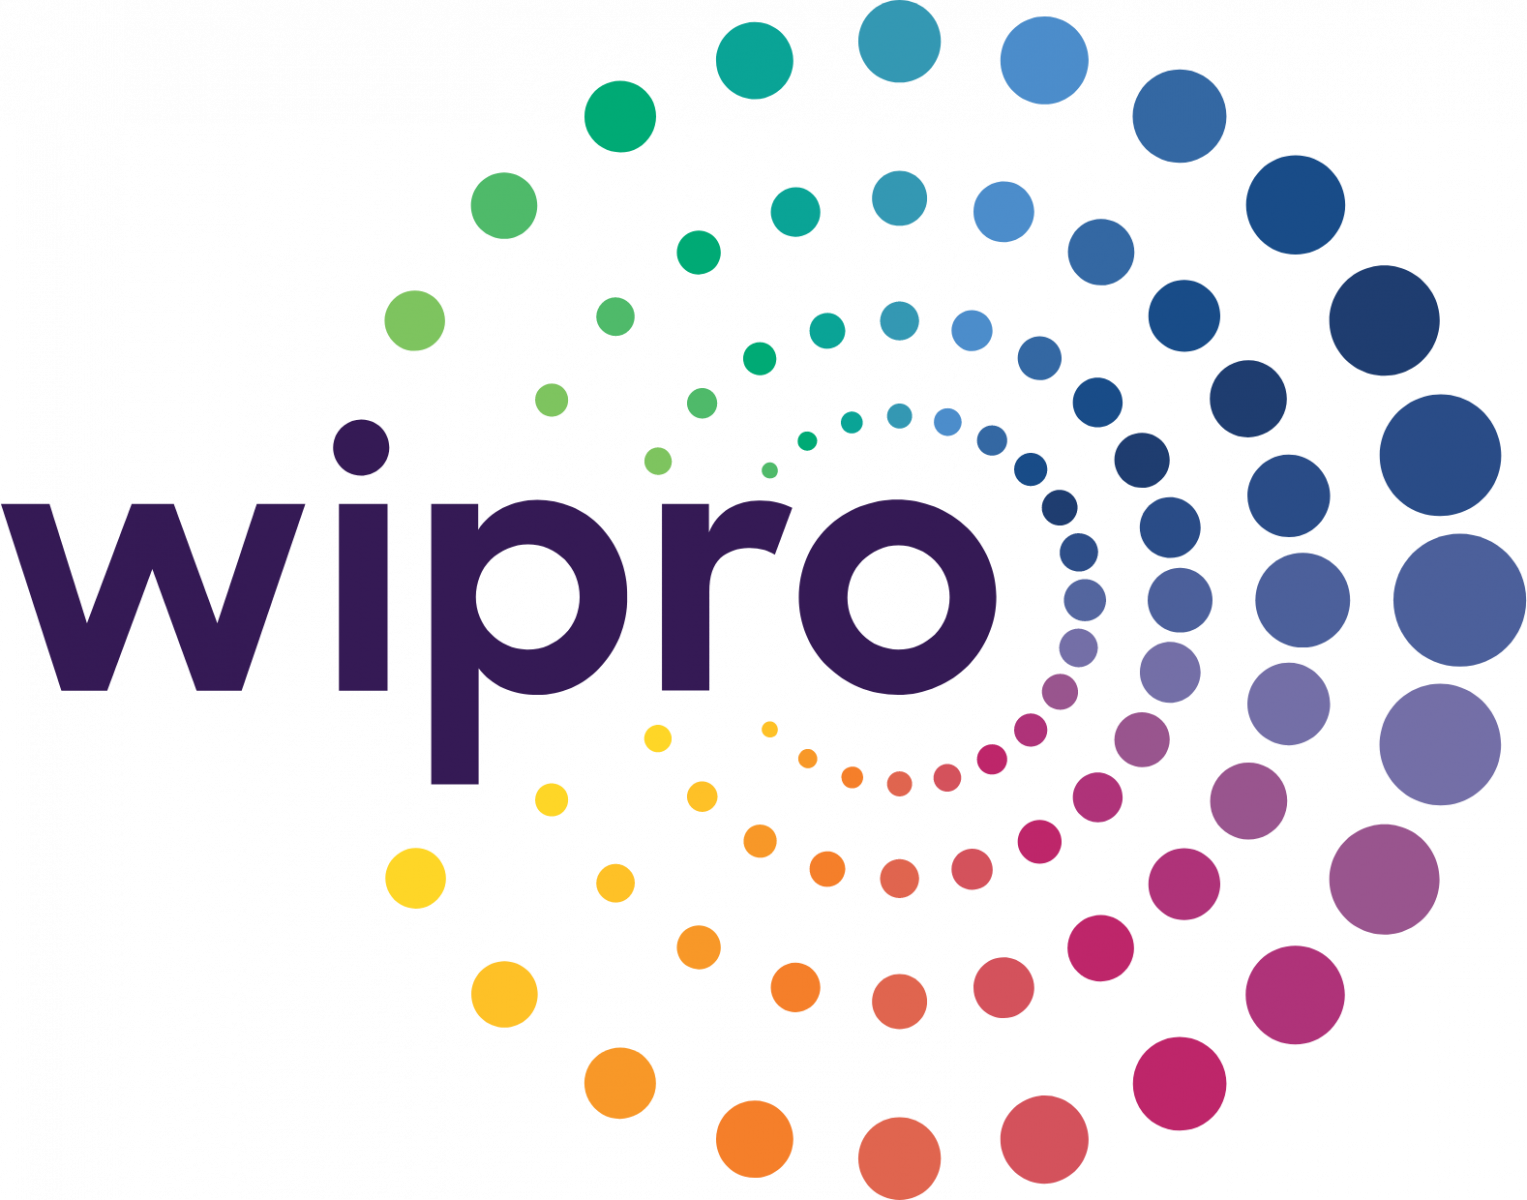 Wipro It companies in Dublin